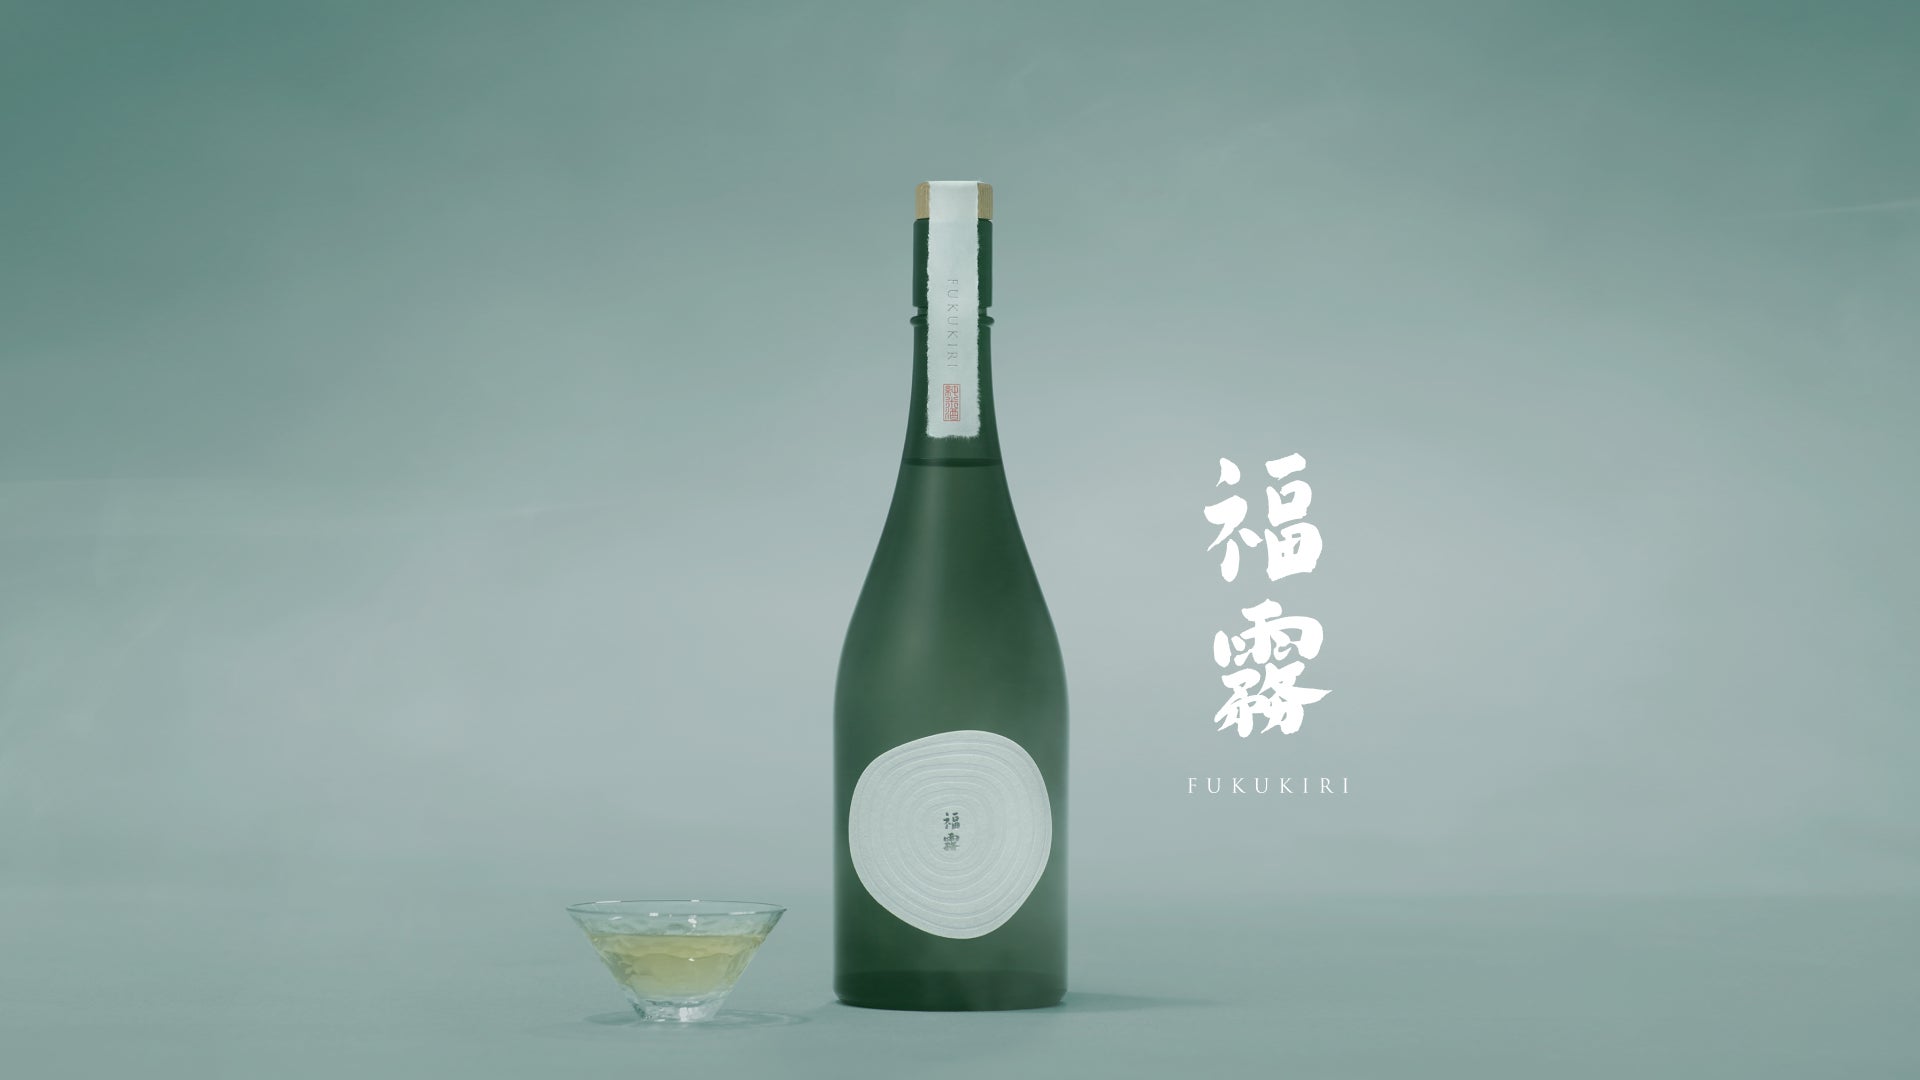 自然の恩恵を受けた有機純米酒「福霧」が新登場。生涯付き添う日本酒を目指して、創業400年の老舗酒蔵”福光屋”と窪塚洋介がプロジェクトに参画